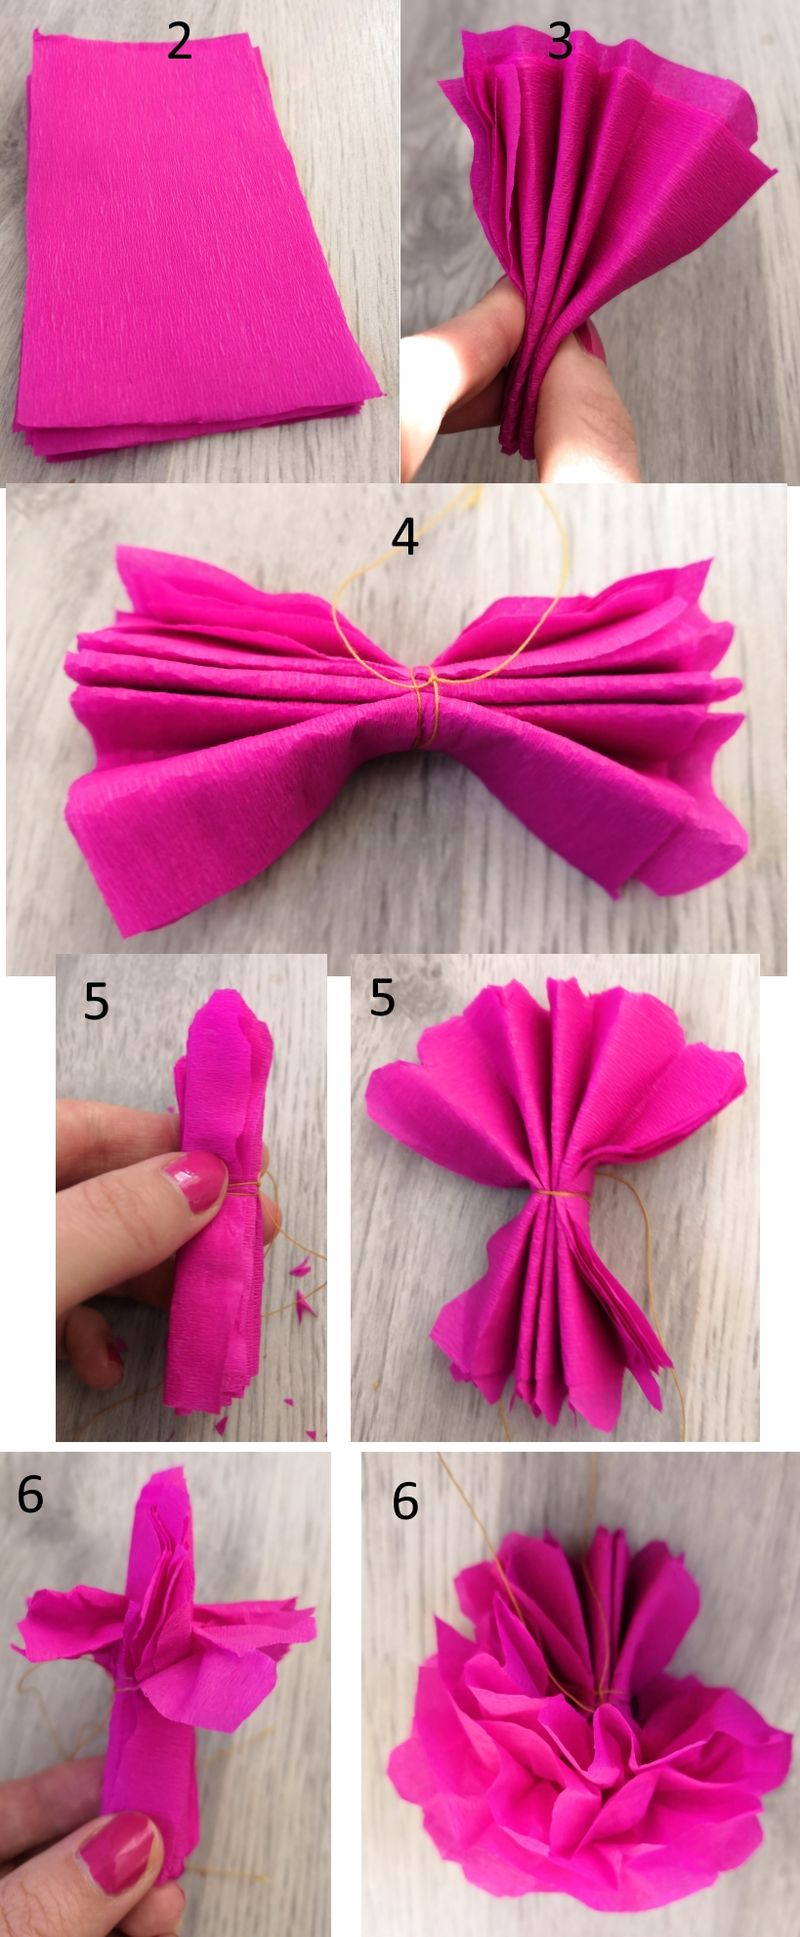 guide how to do miniature pom-poms diy (crepe or silk paper)